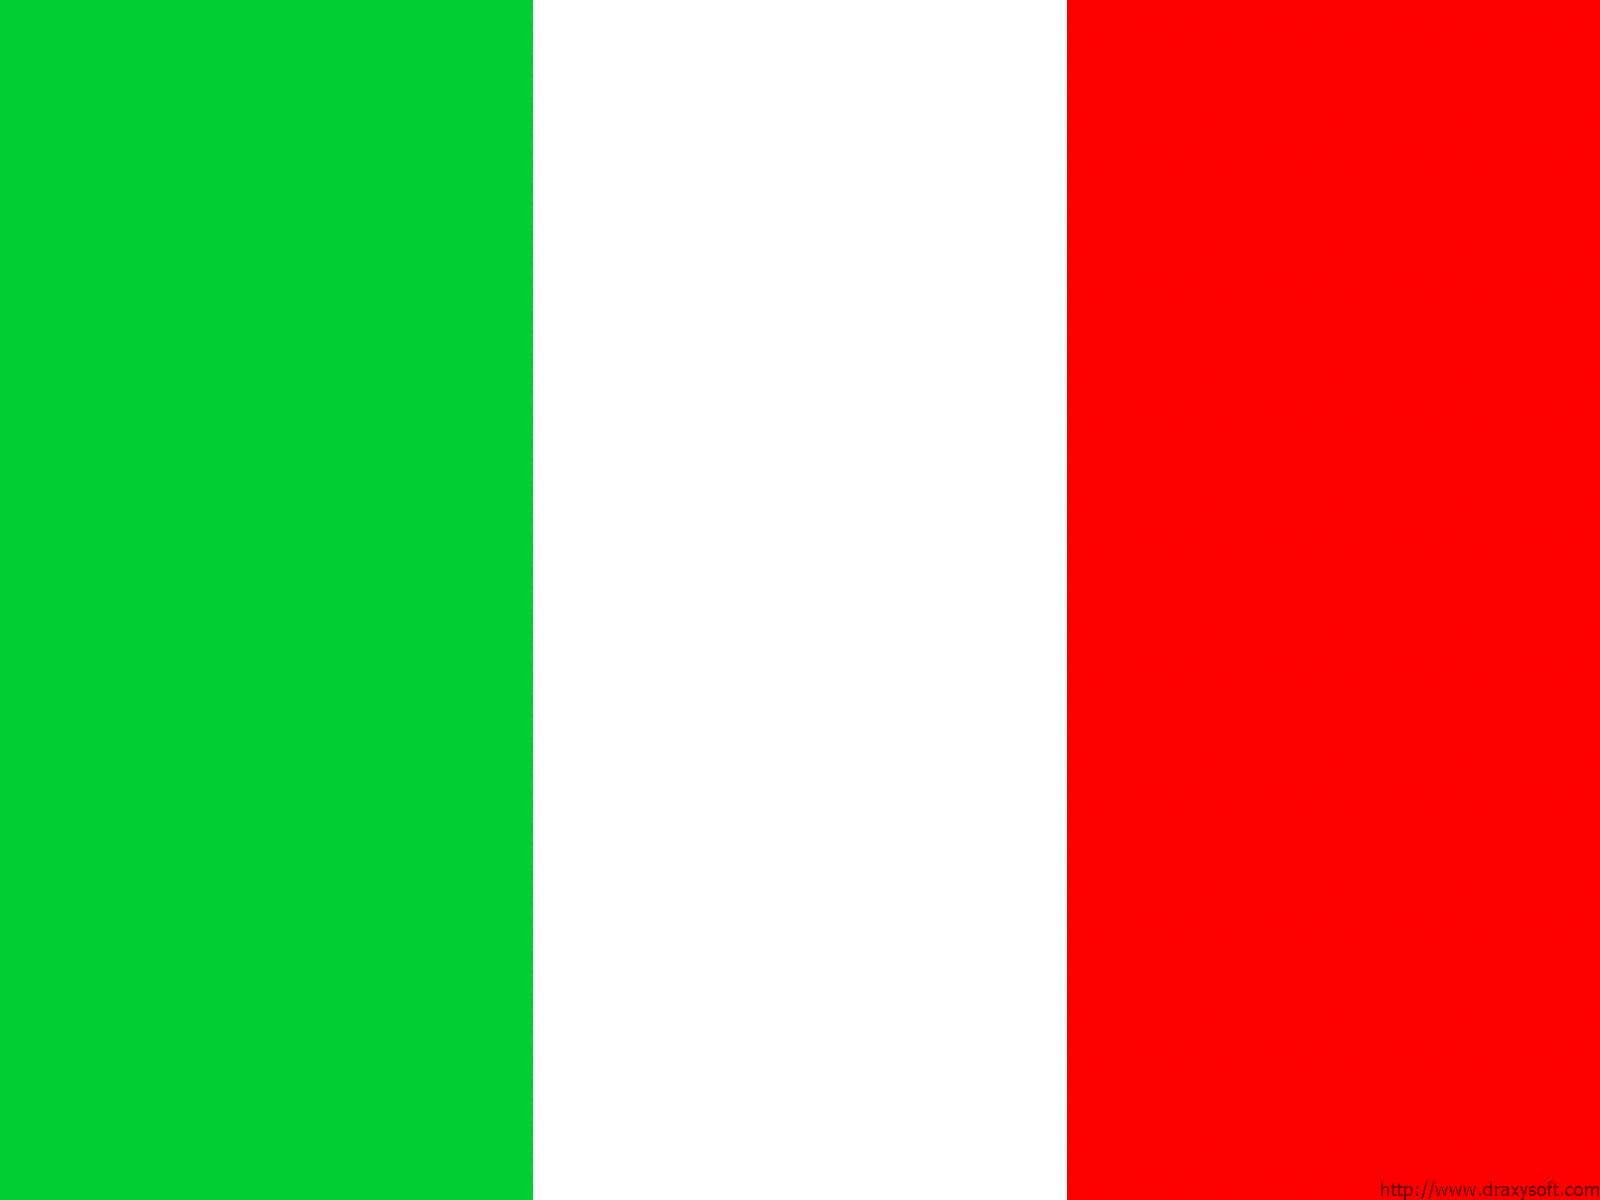 boivieapedia \/ Italy